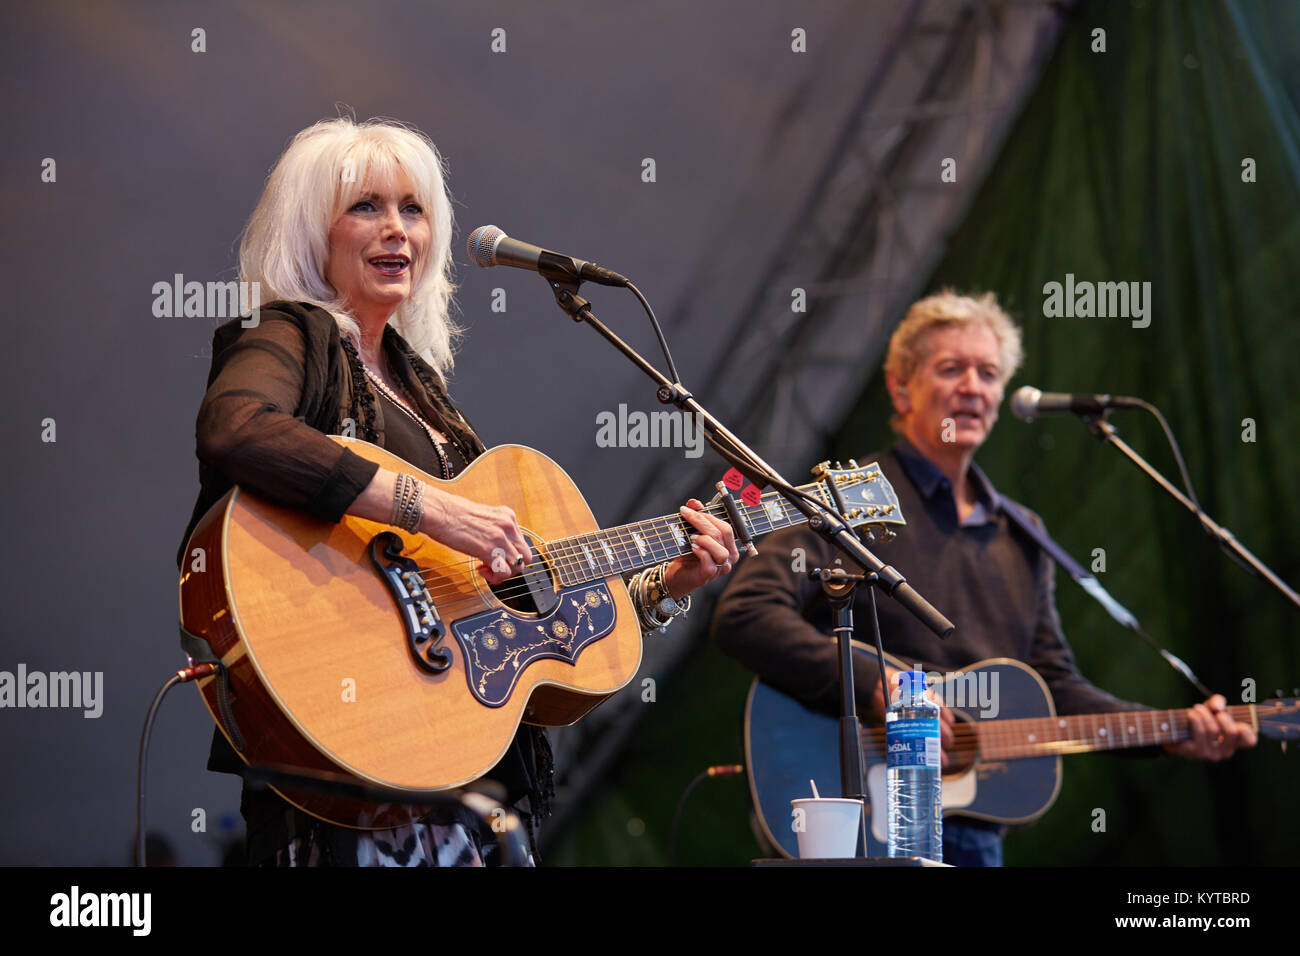 Le duo country Emmylou Harris & Rodney Crowell effectue un concert live au festival de musique norvégienne Oslo Fjord Fest 2015 à Oslo. La Norvège, 15/07 2015. Banque D'Images